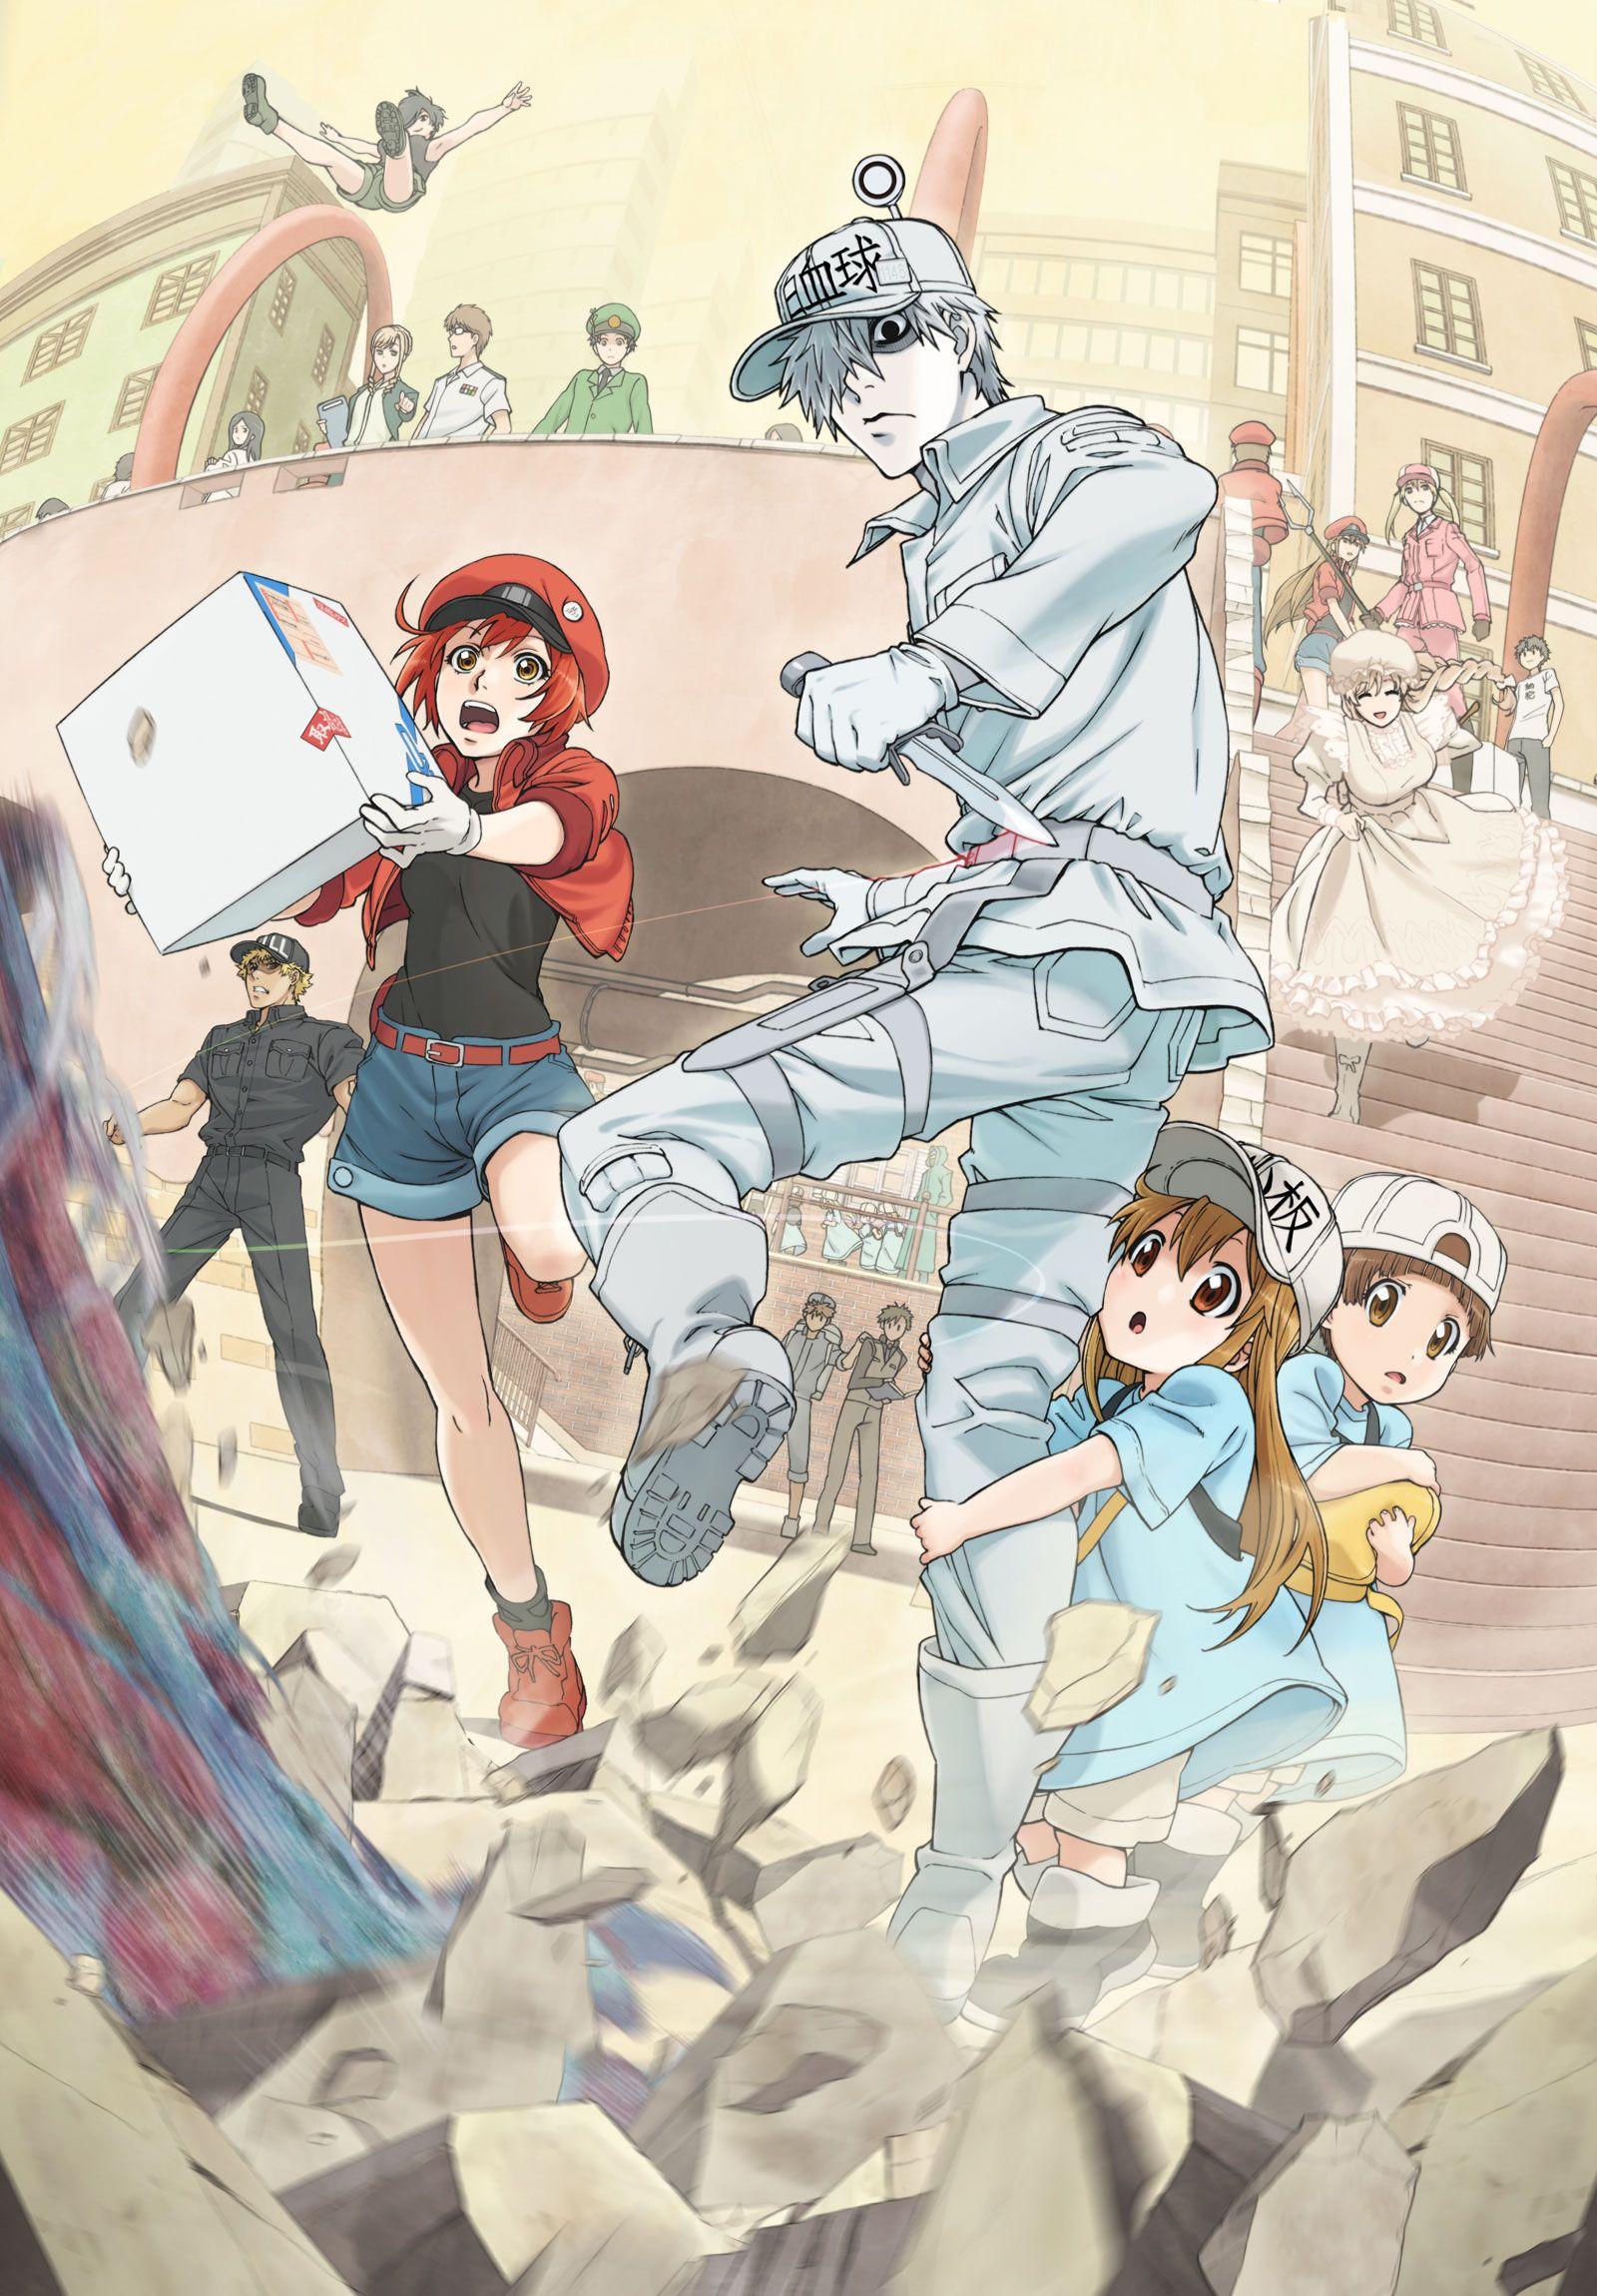 Hataraku Saibou (Cells At Work!) Anime Image Board